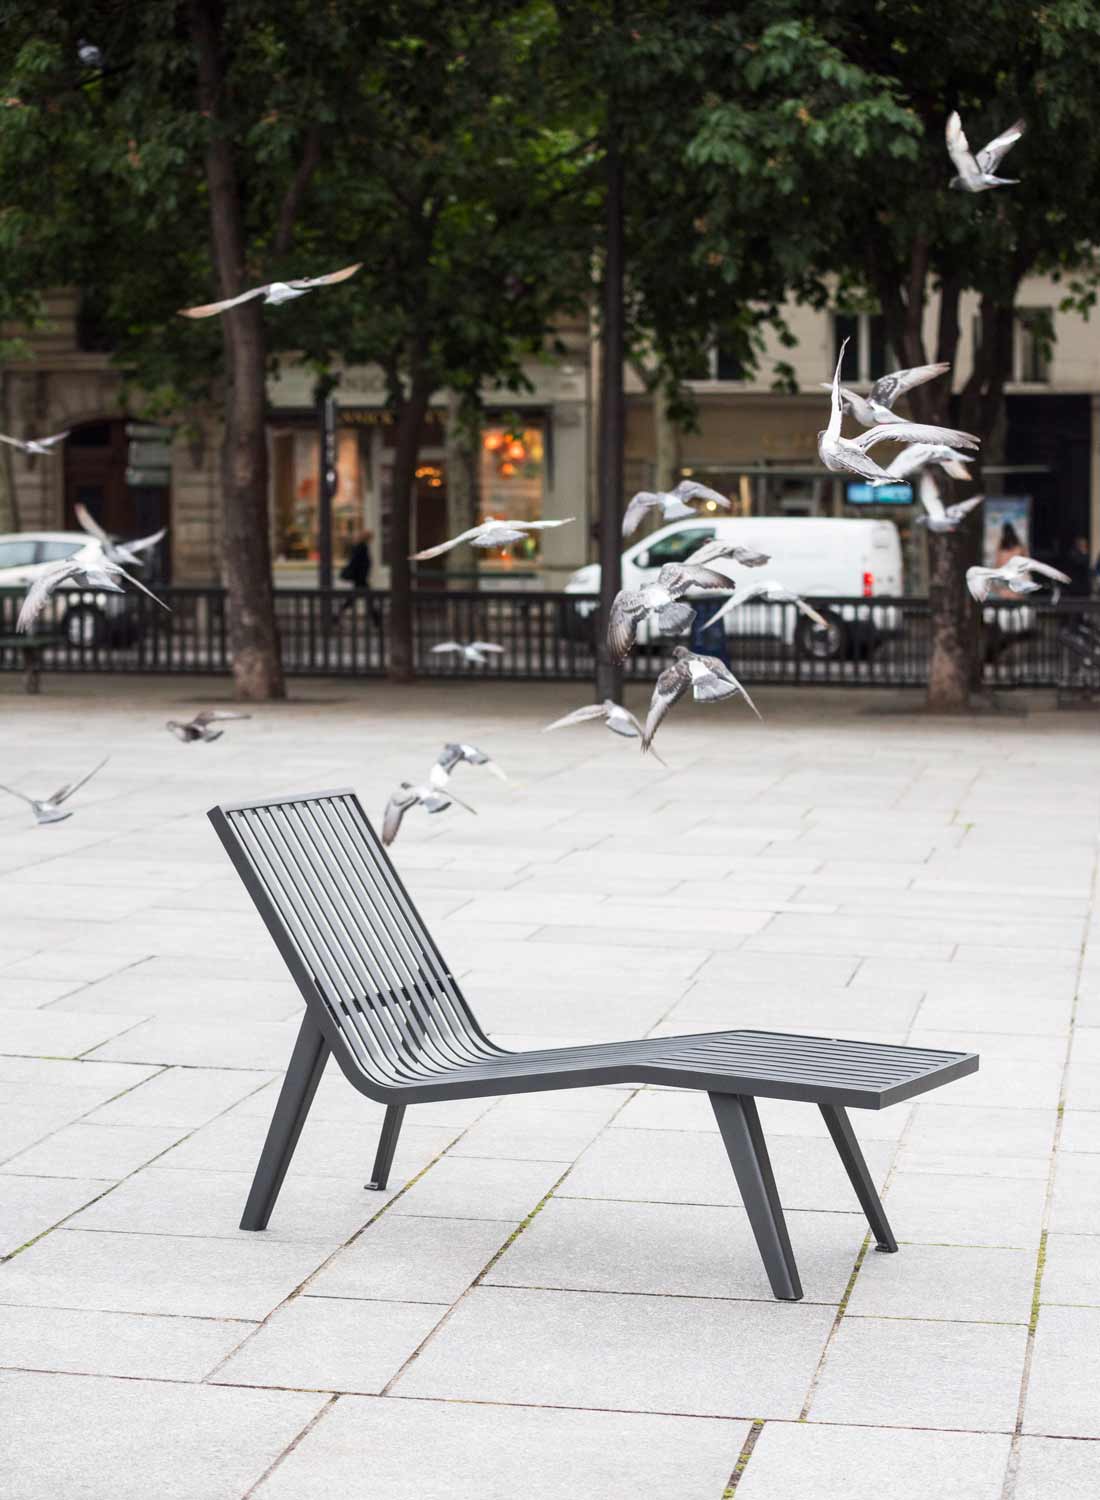 Chaise longue MICHIGAN conçu et fabriqué par Aréa mobilier urbain